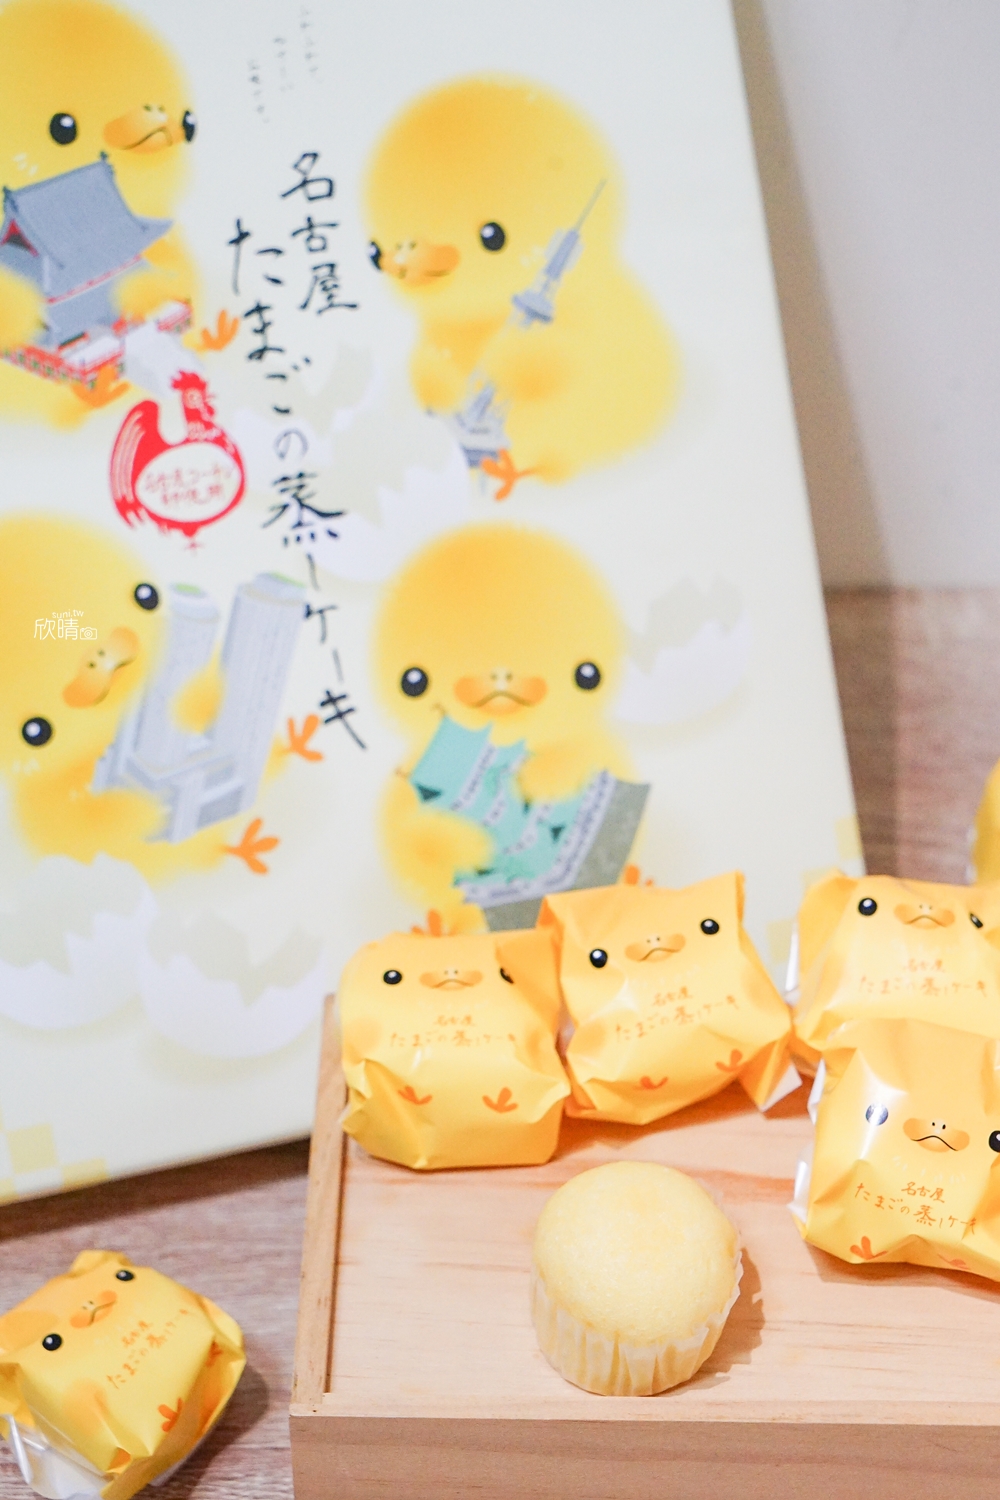 日本禮盒伴手禮團購｜名古屋可愛小雞蛋糕禮盒。不用出國也能吃到日本春節禮盒